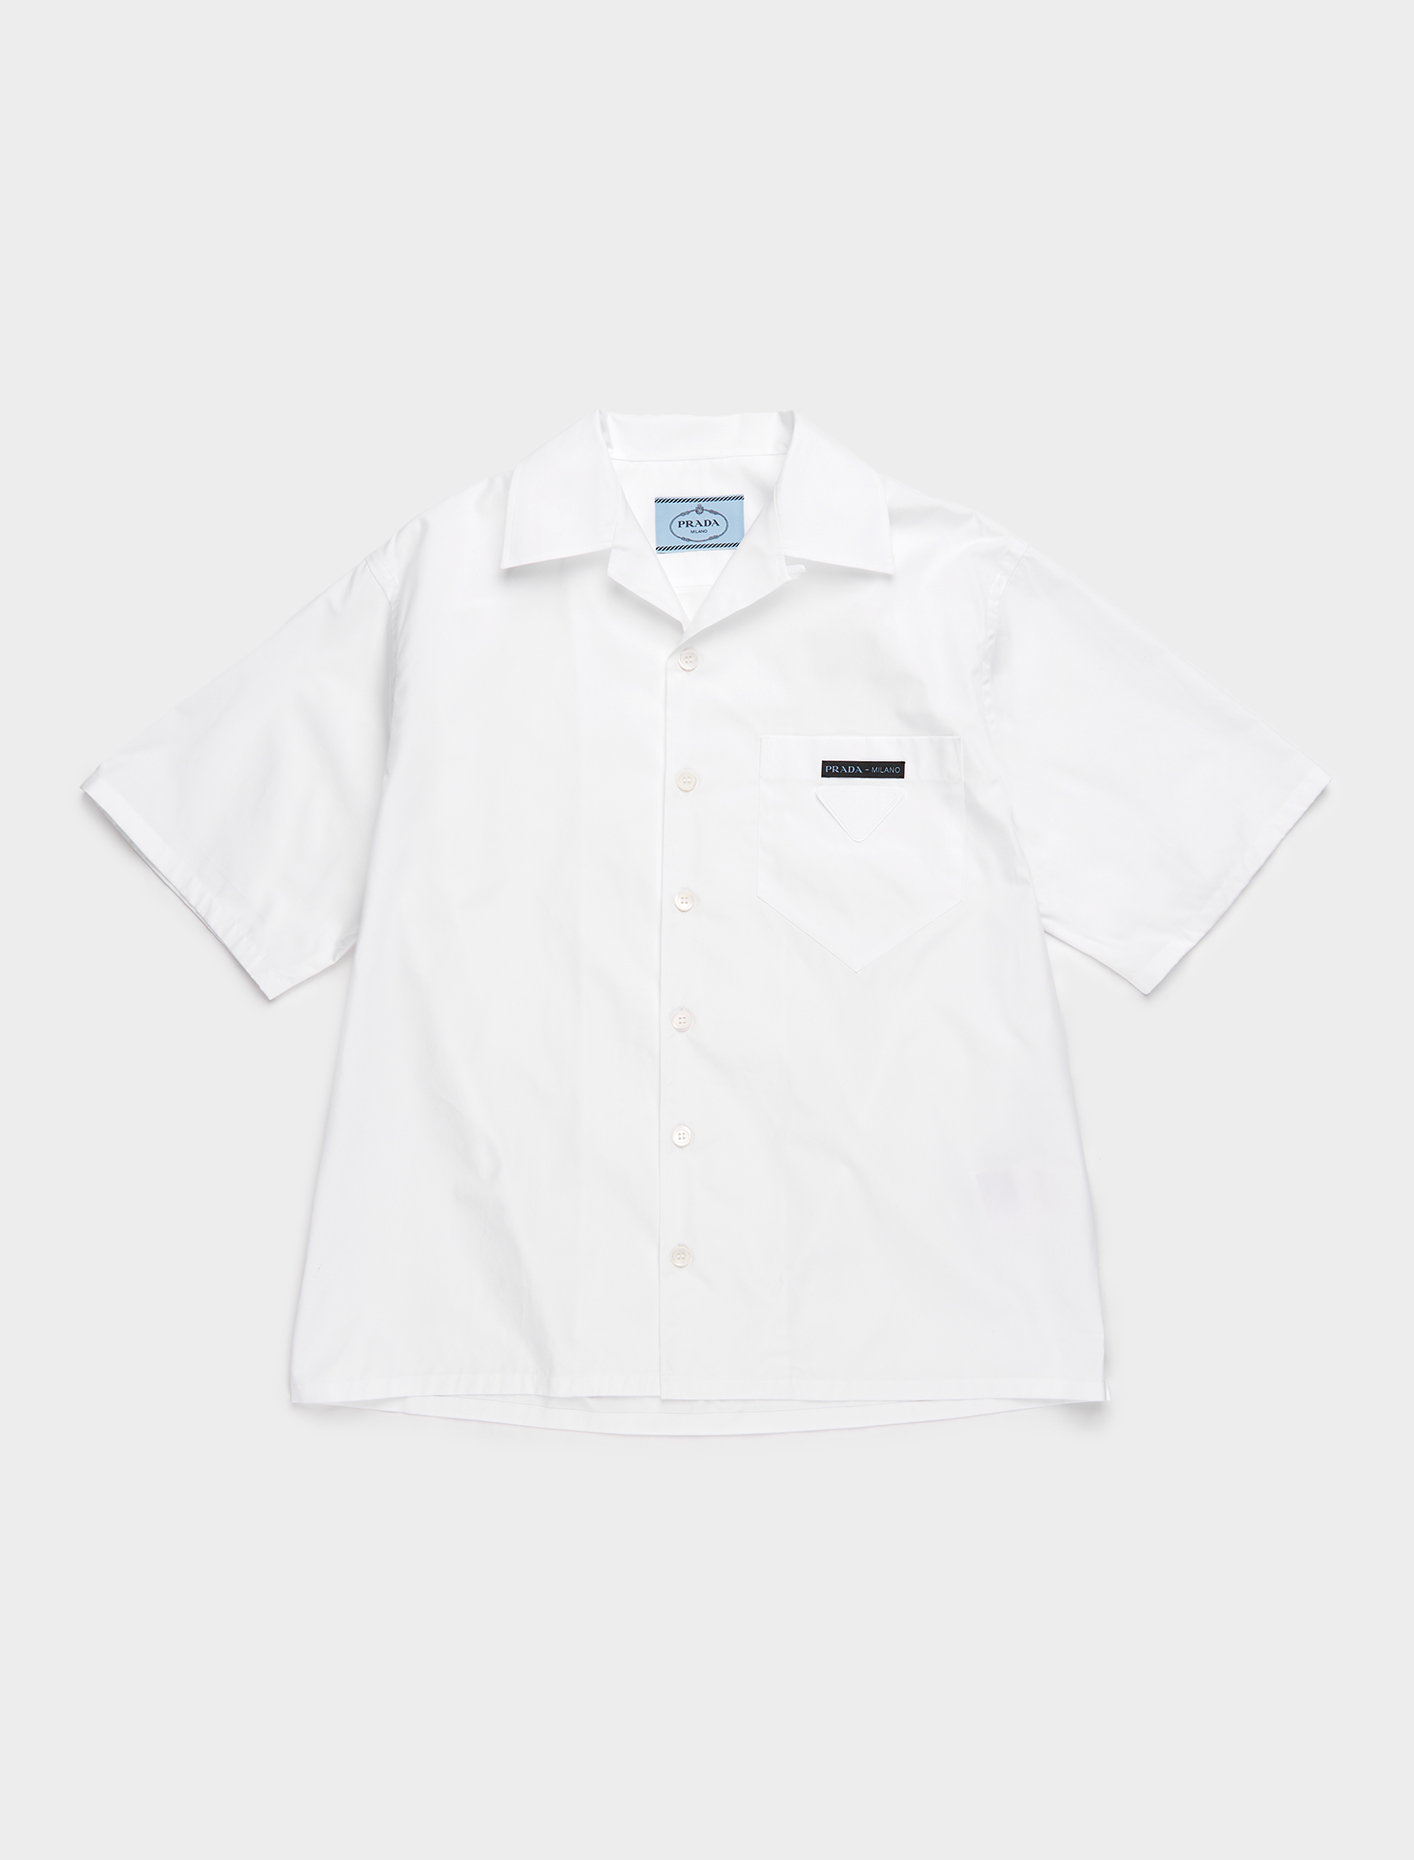 prada white shirt